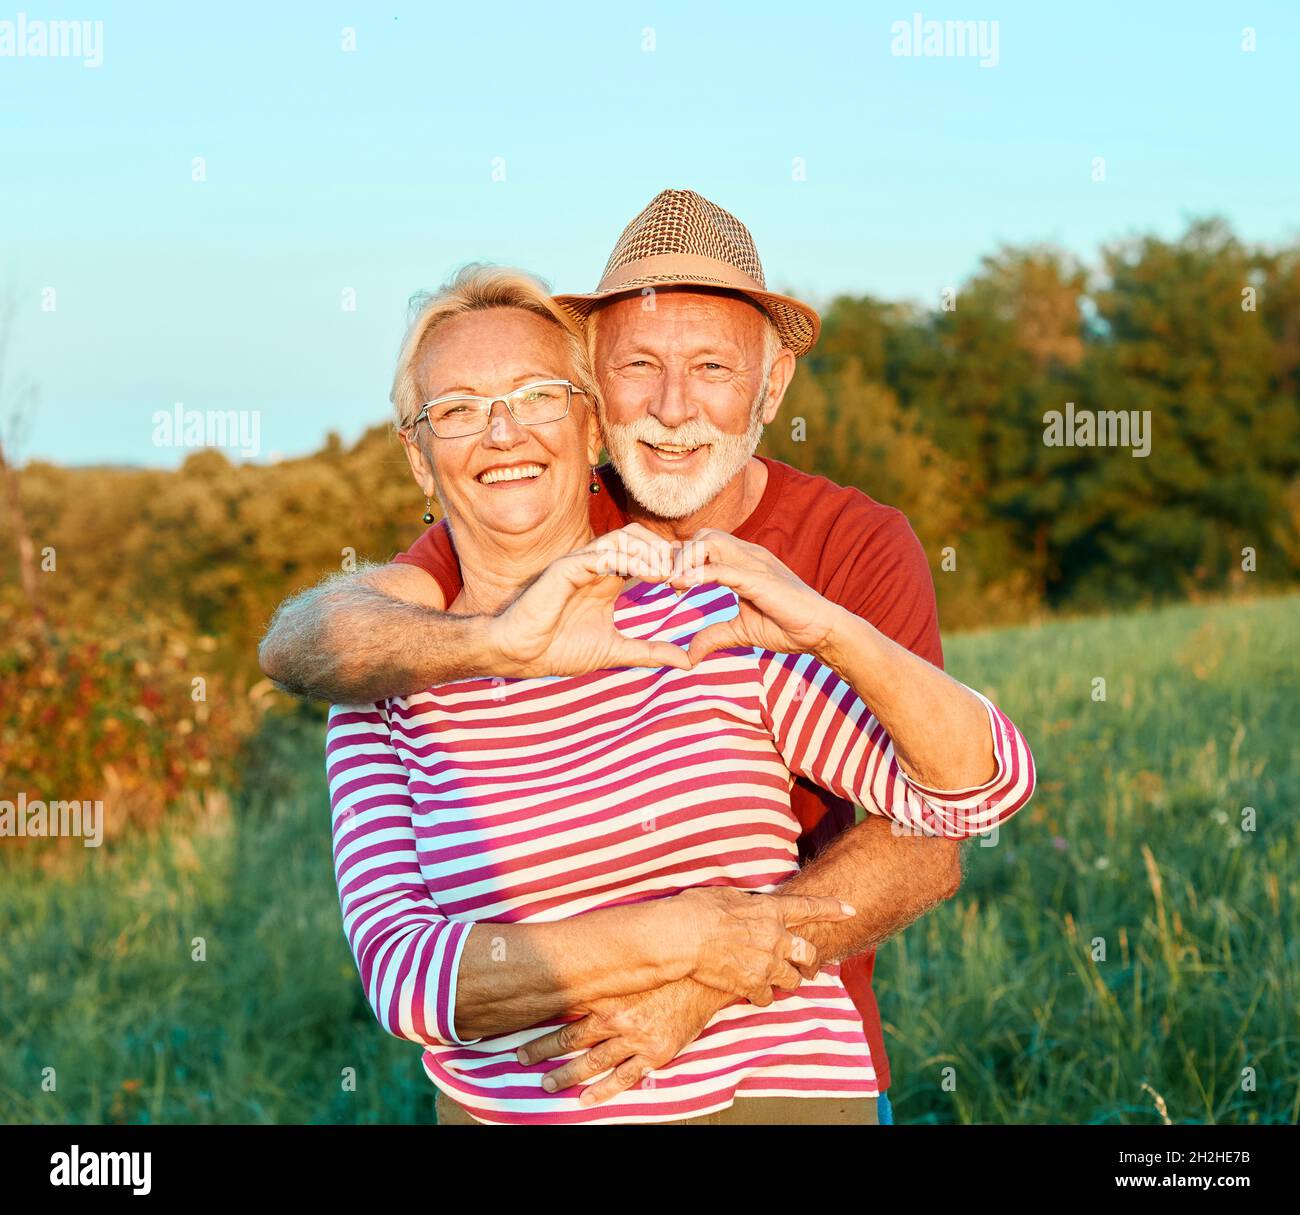 donna uomo outdoor coppia anziano felice lifestyle pensione insieme sorridente amore vecchia natura matura Foto Stock